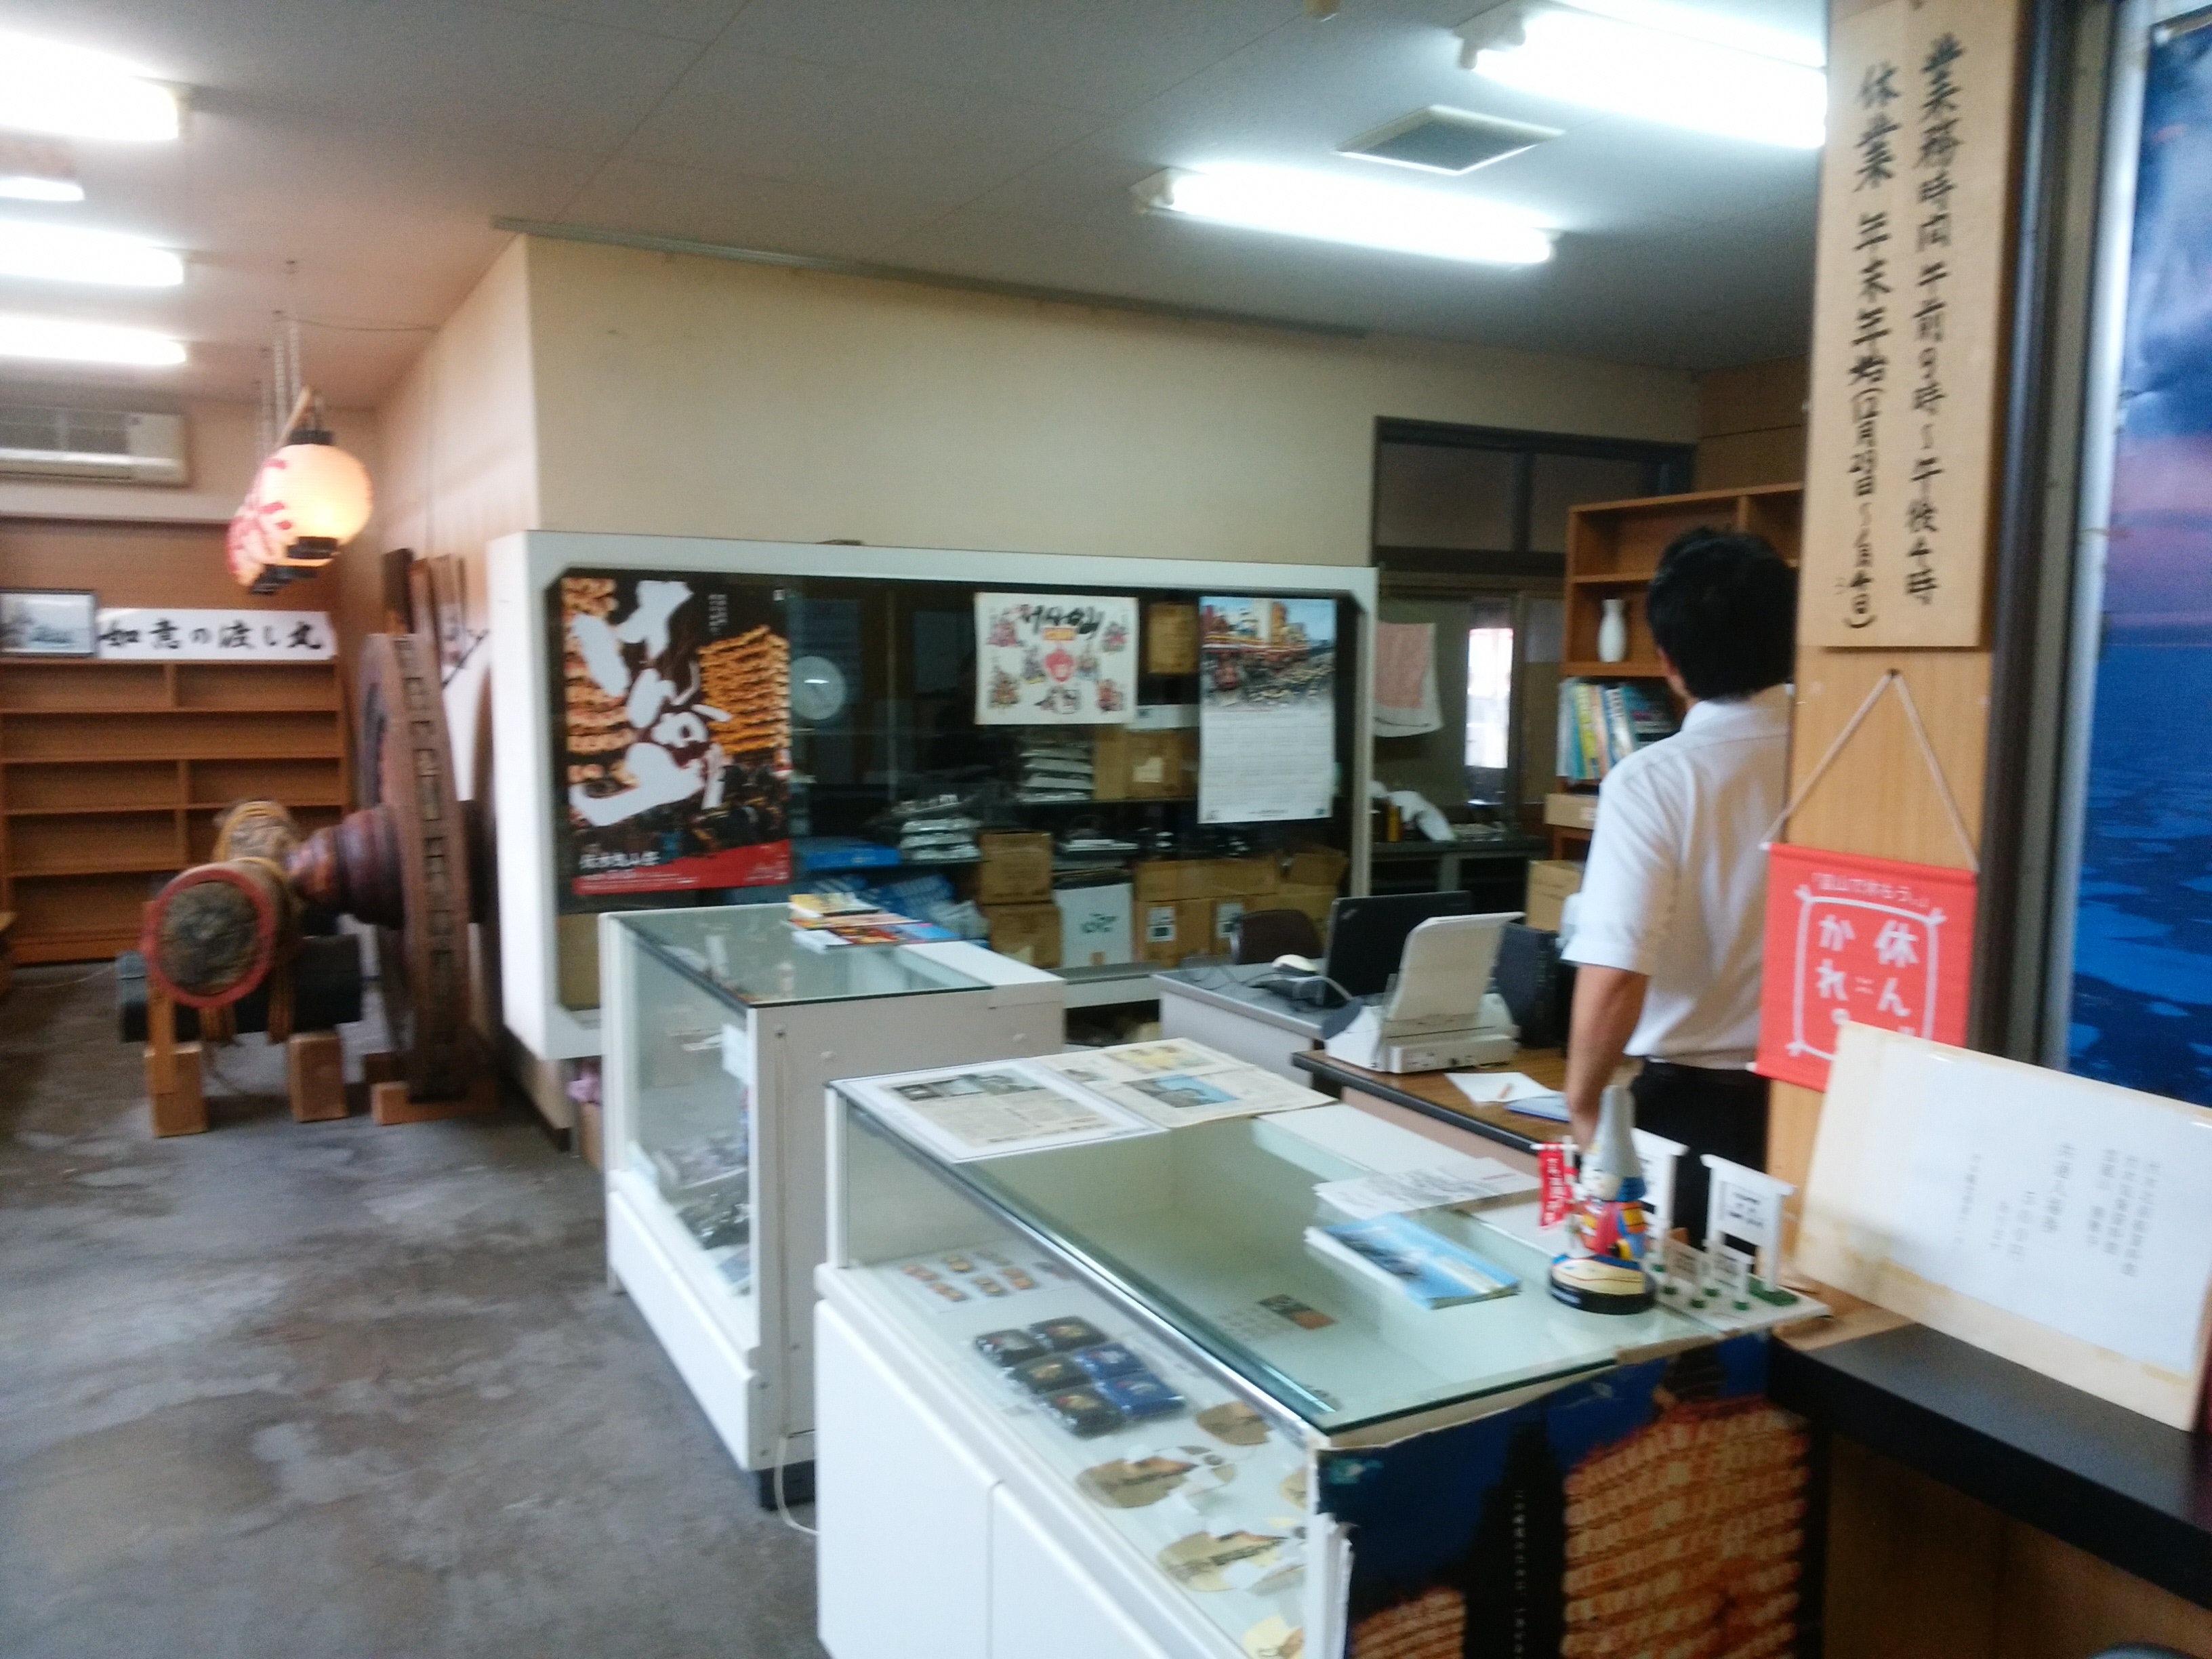 Fushiki Tourism Promotion Center image 2